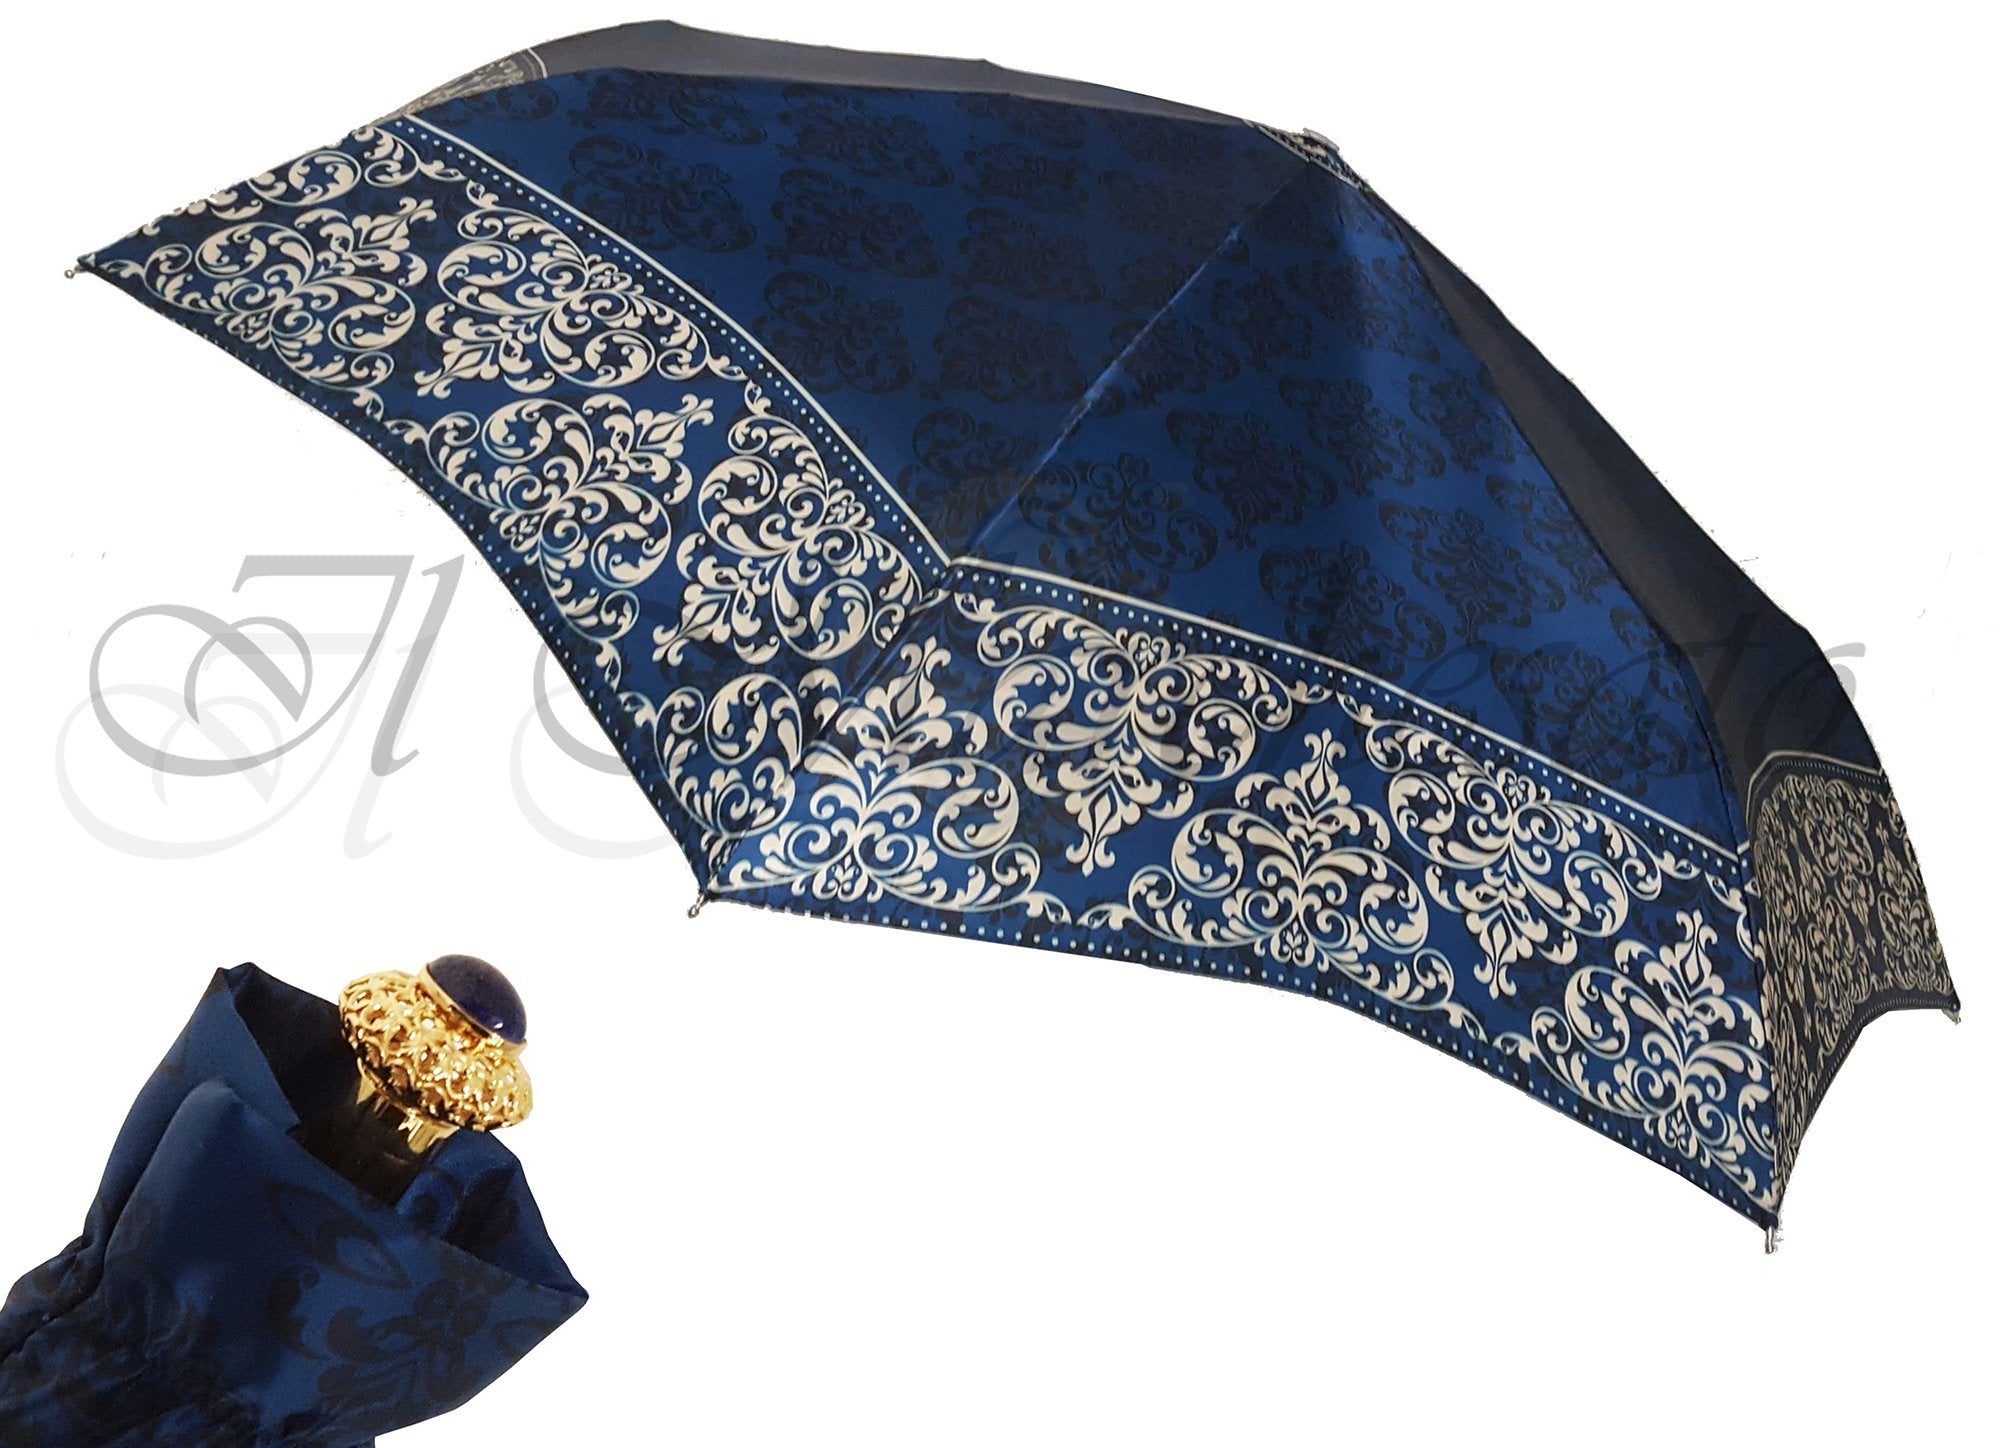 Stylish Women's Folding Umbrella - Exclusive Design - il-marchesato